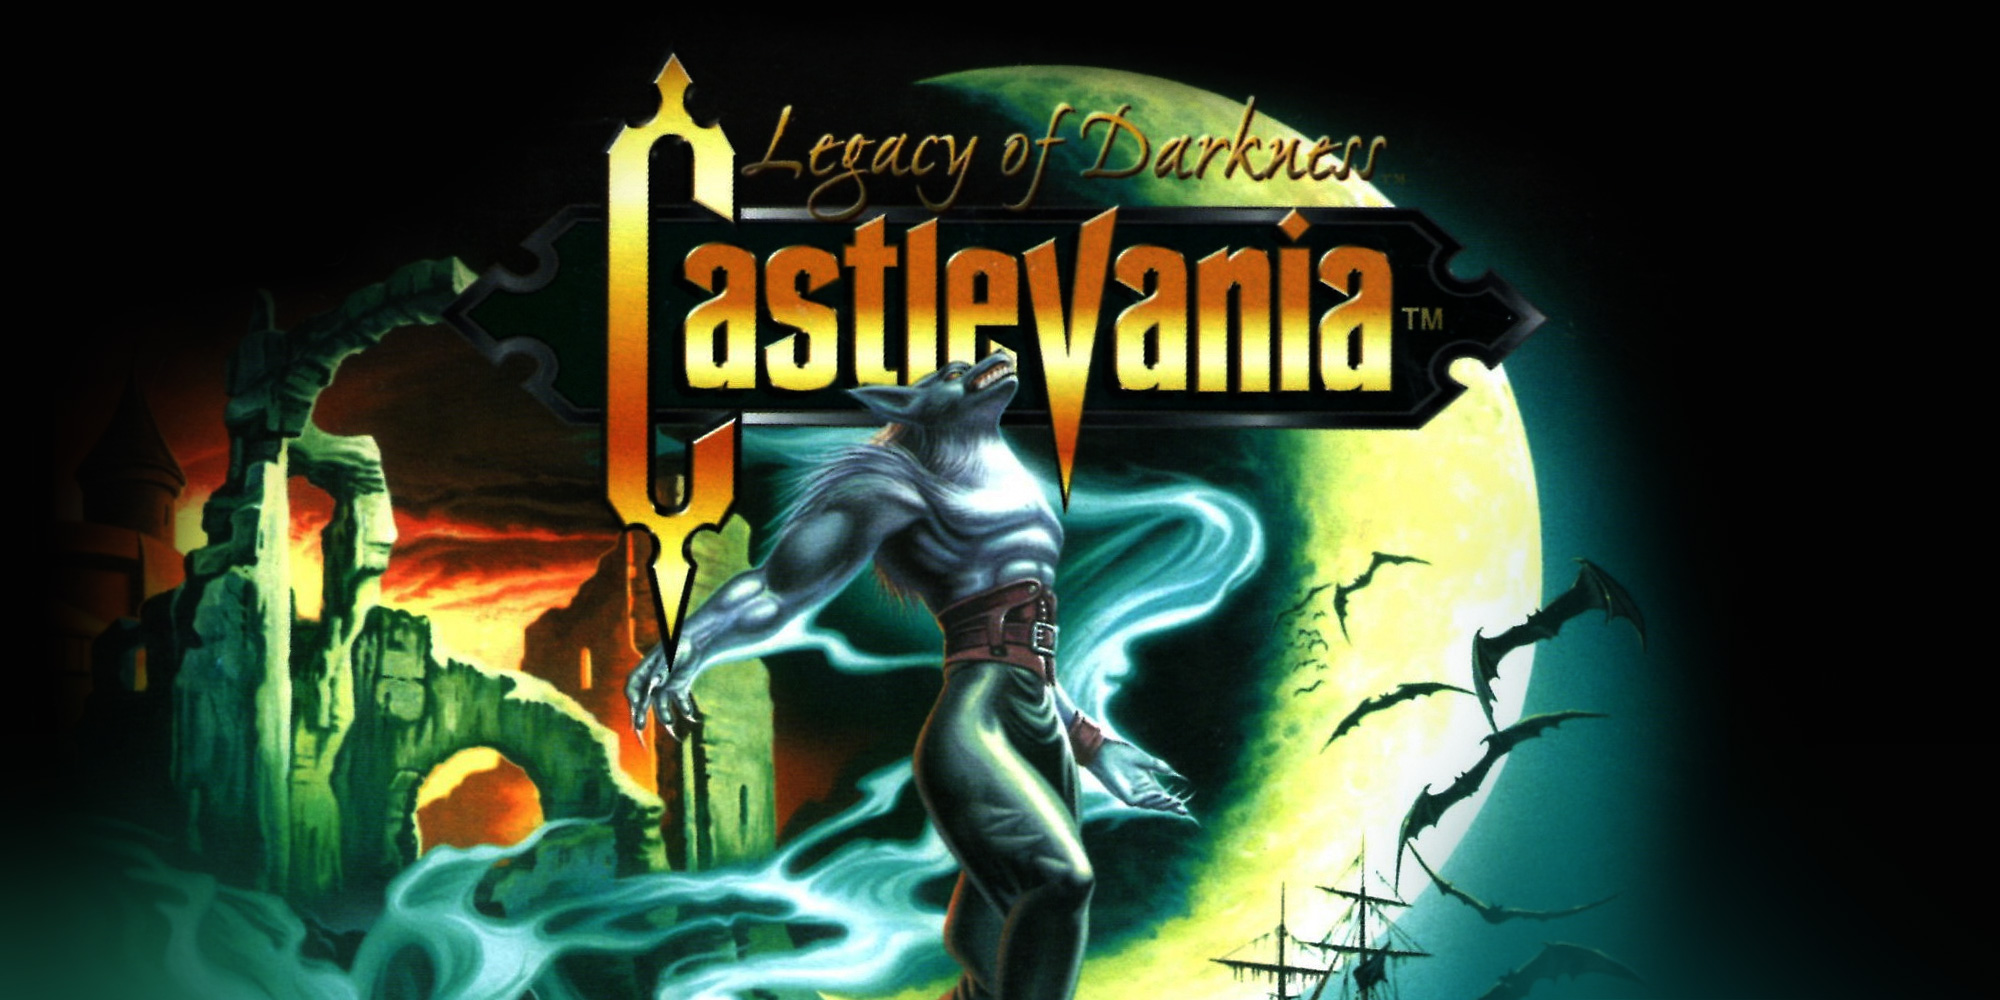 Castlevania nintendo. Castlevania Nintendo 64. Castlevania Legacy of Darkness n64. Castlevania Legacy of Darkness Nintendo 64. Кастельвания Нинтендо 64.